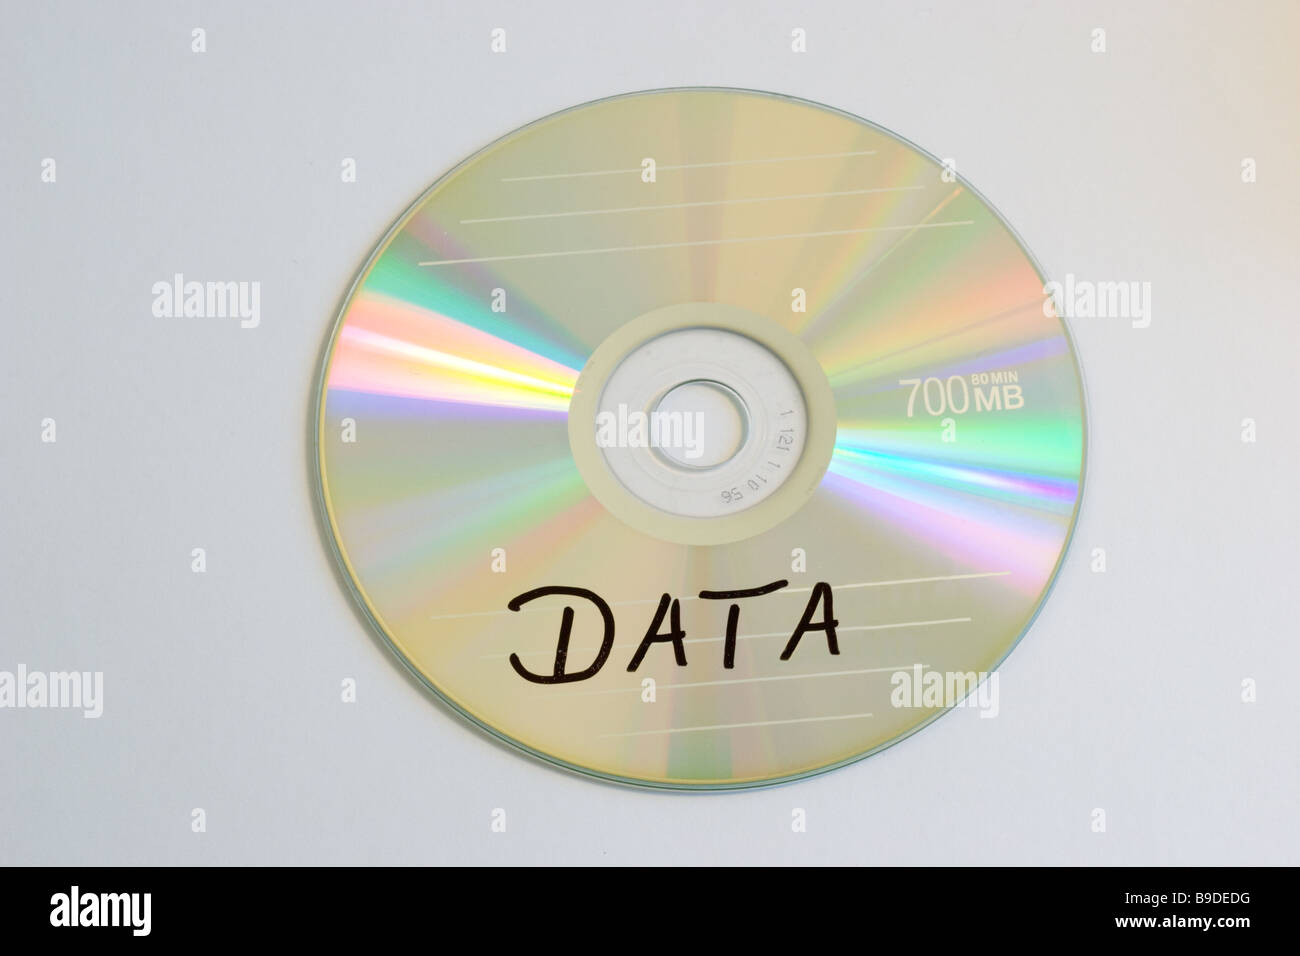 Immagine dell'icona CD di dati con i dati etichettati Foto Stock